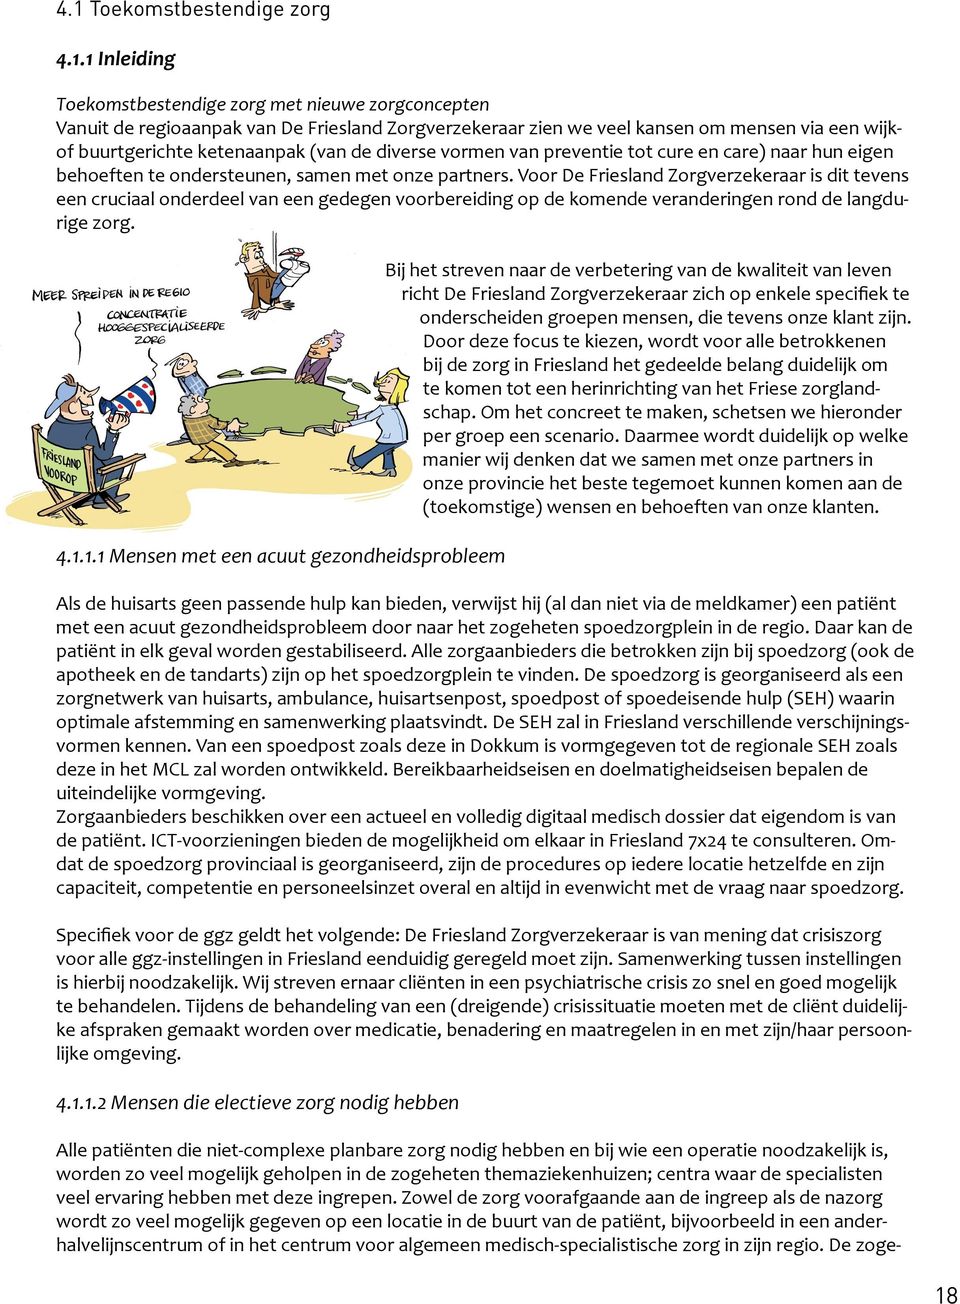 Voor De Friesland Zorgverzekeraar is dit tevens een cruciaal onderdeel van een gedegen voorbereiding op de komende veranderingen rond de langdurige zorg. 4.1.